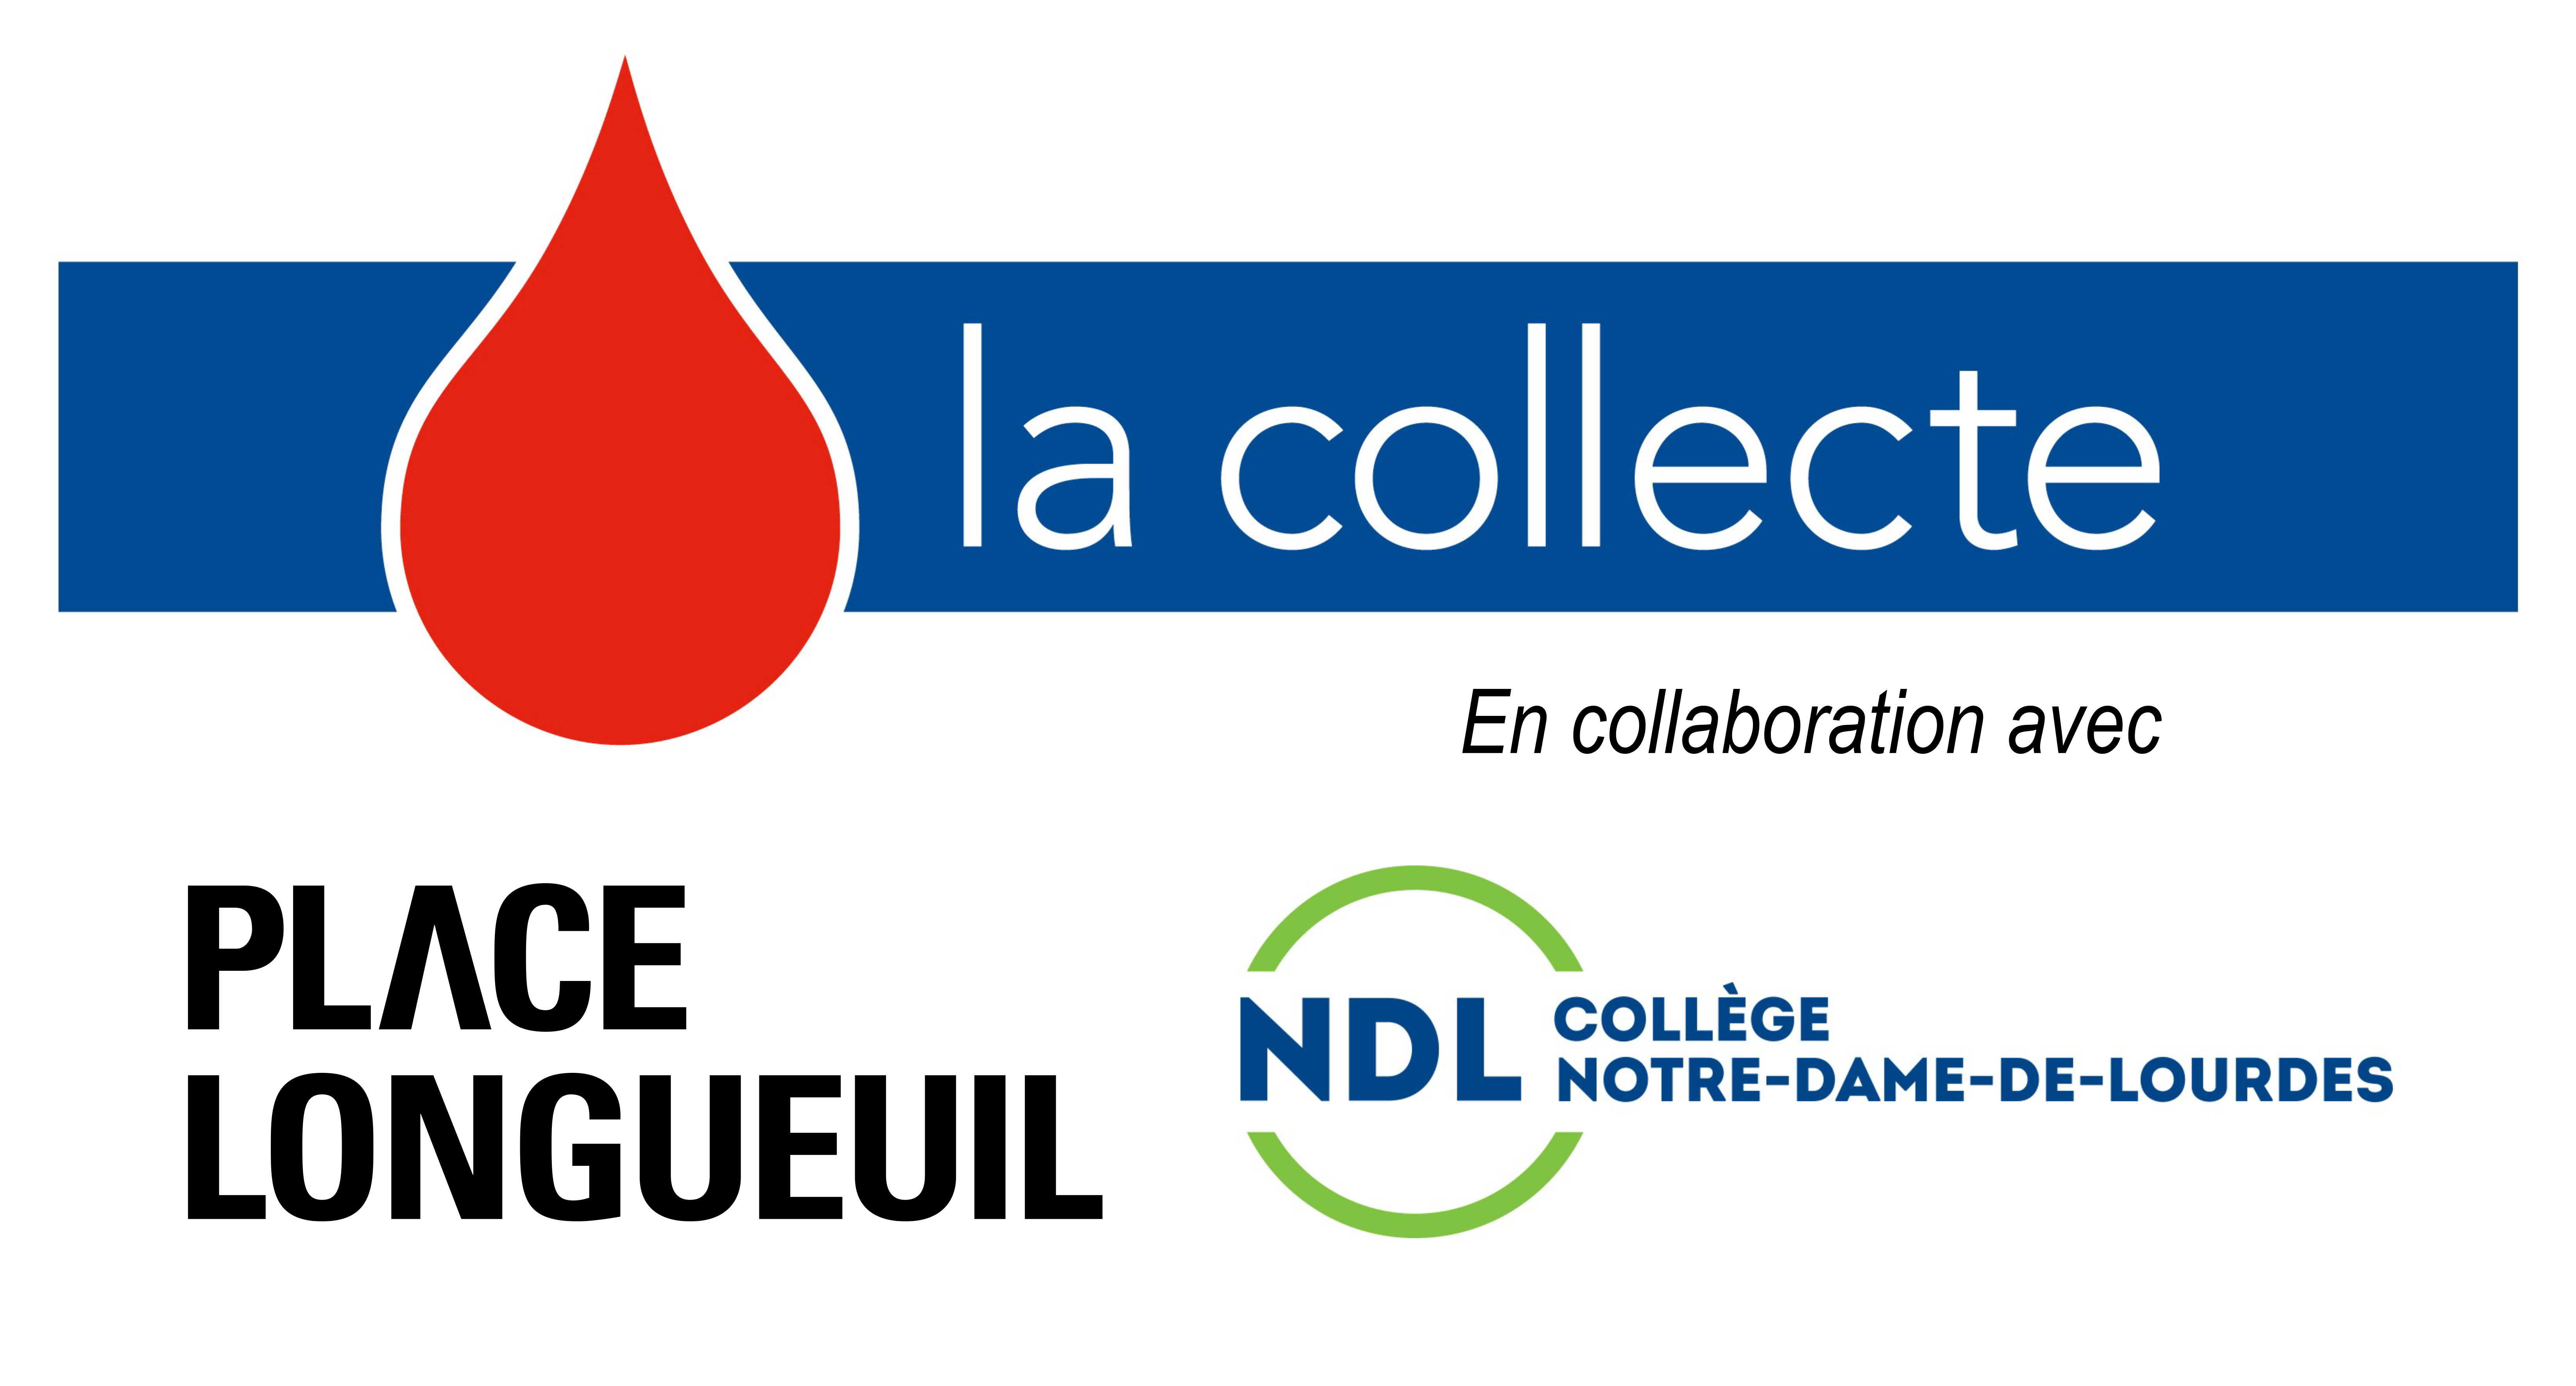 Collecte de sang NDL Place Longueuil 2020